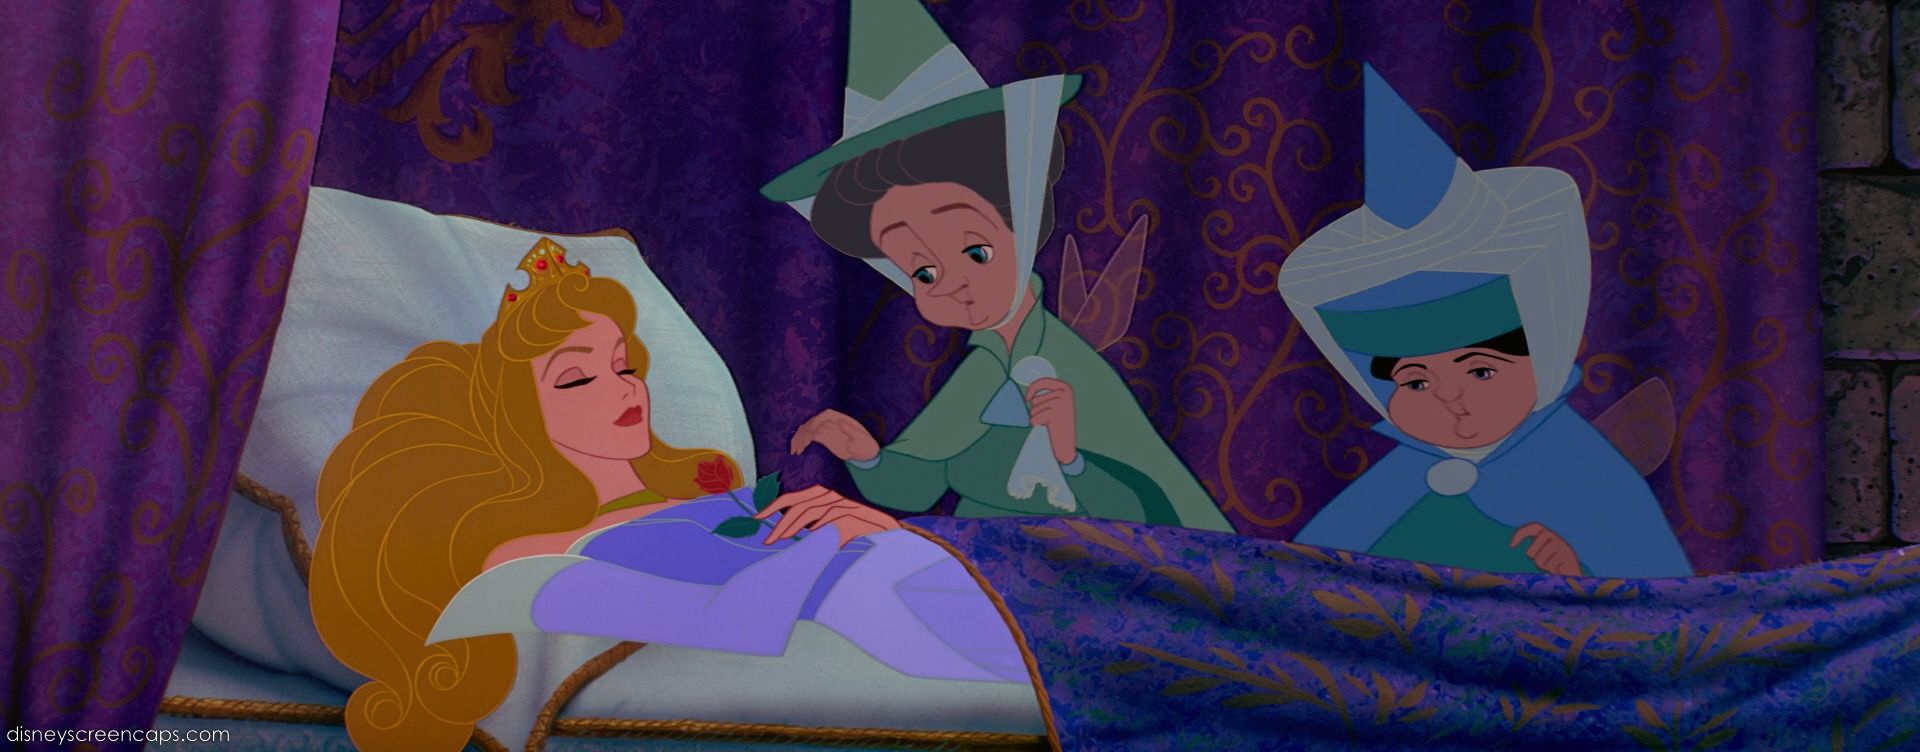 10 chi tiết khó hiểu từ loạt phim công chúa Disney: Đôi giày của Lọ Lem vẫn là bí ẩn - Ảnh 9.